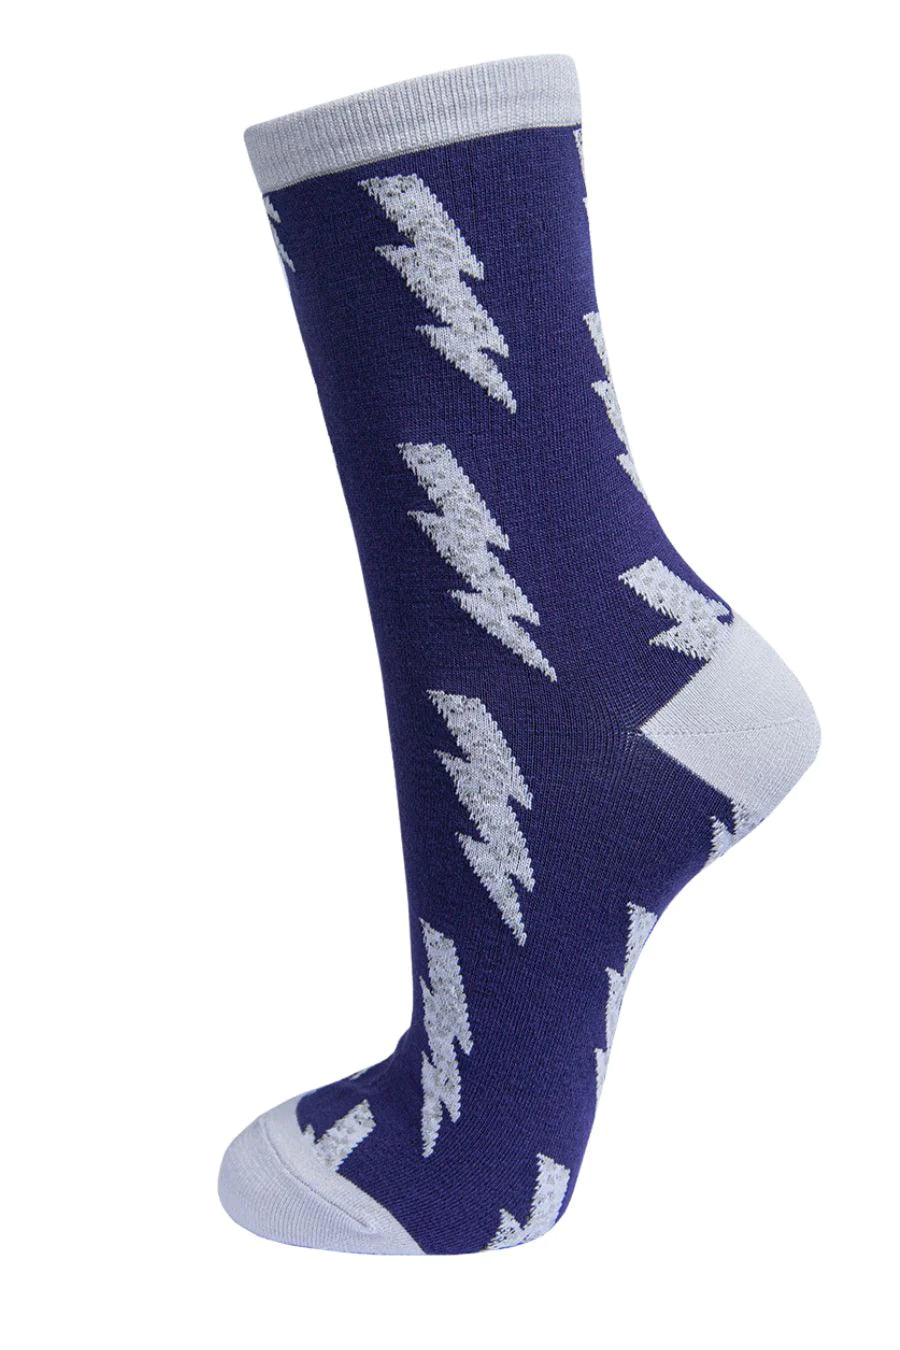 Navy & Grey Lightning Bolt Socks